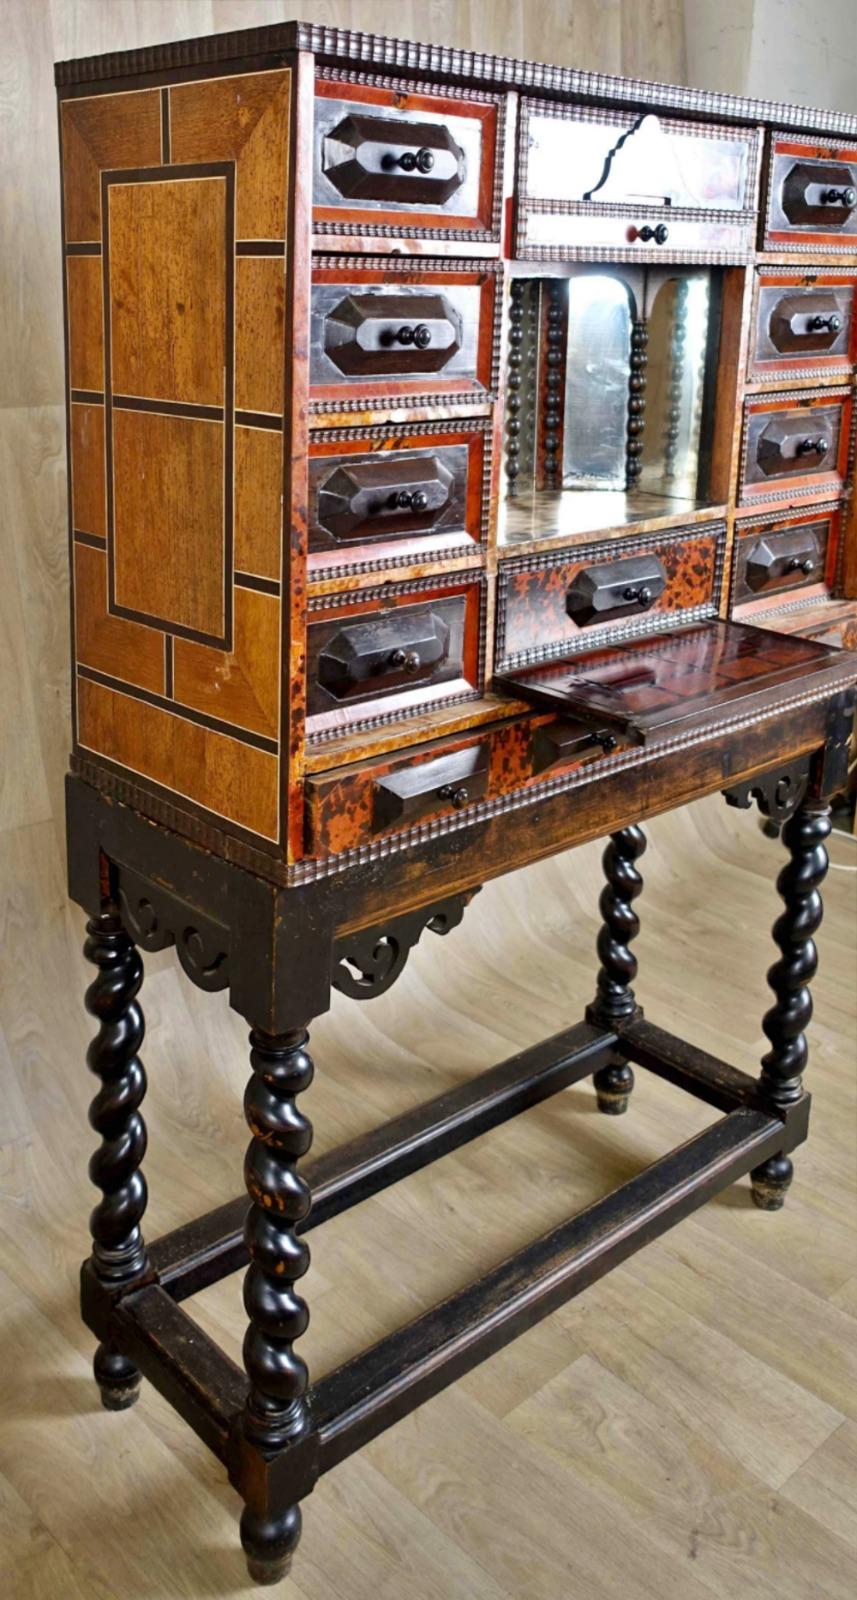 Flämisches Kabinett Antwerpen 17. Jahrhundert


Es hat zehn Schubladen, die mit guillochierten Leisten unterlegt und mit kleinen gedrechselten Knäufen verziert sind. 

Es ist in der Mitte mit einem Theater mit verspiegeltem Hintergrund und